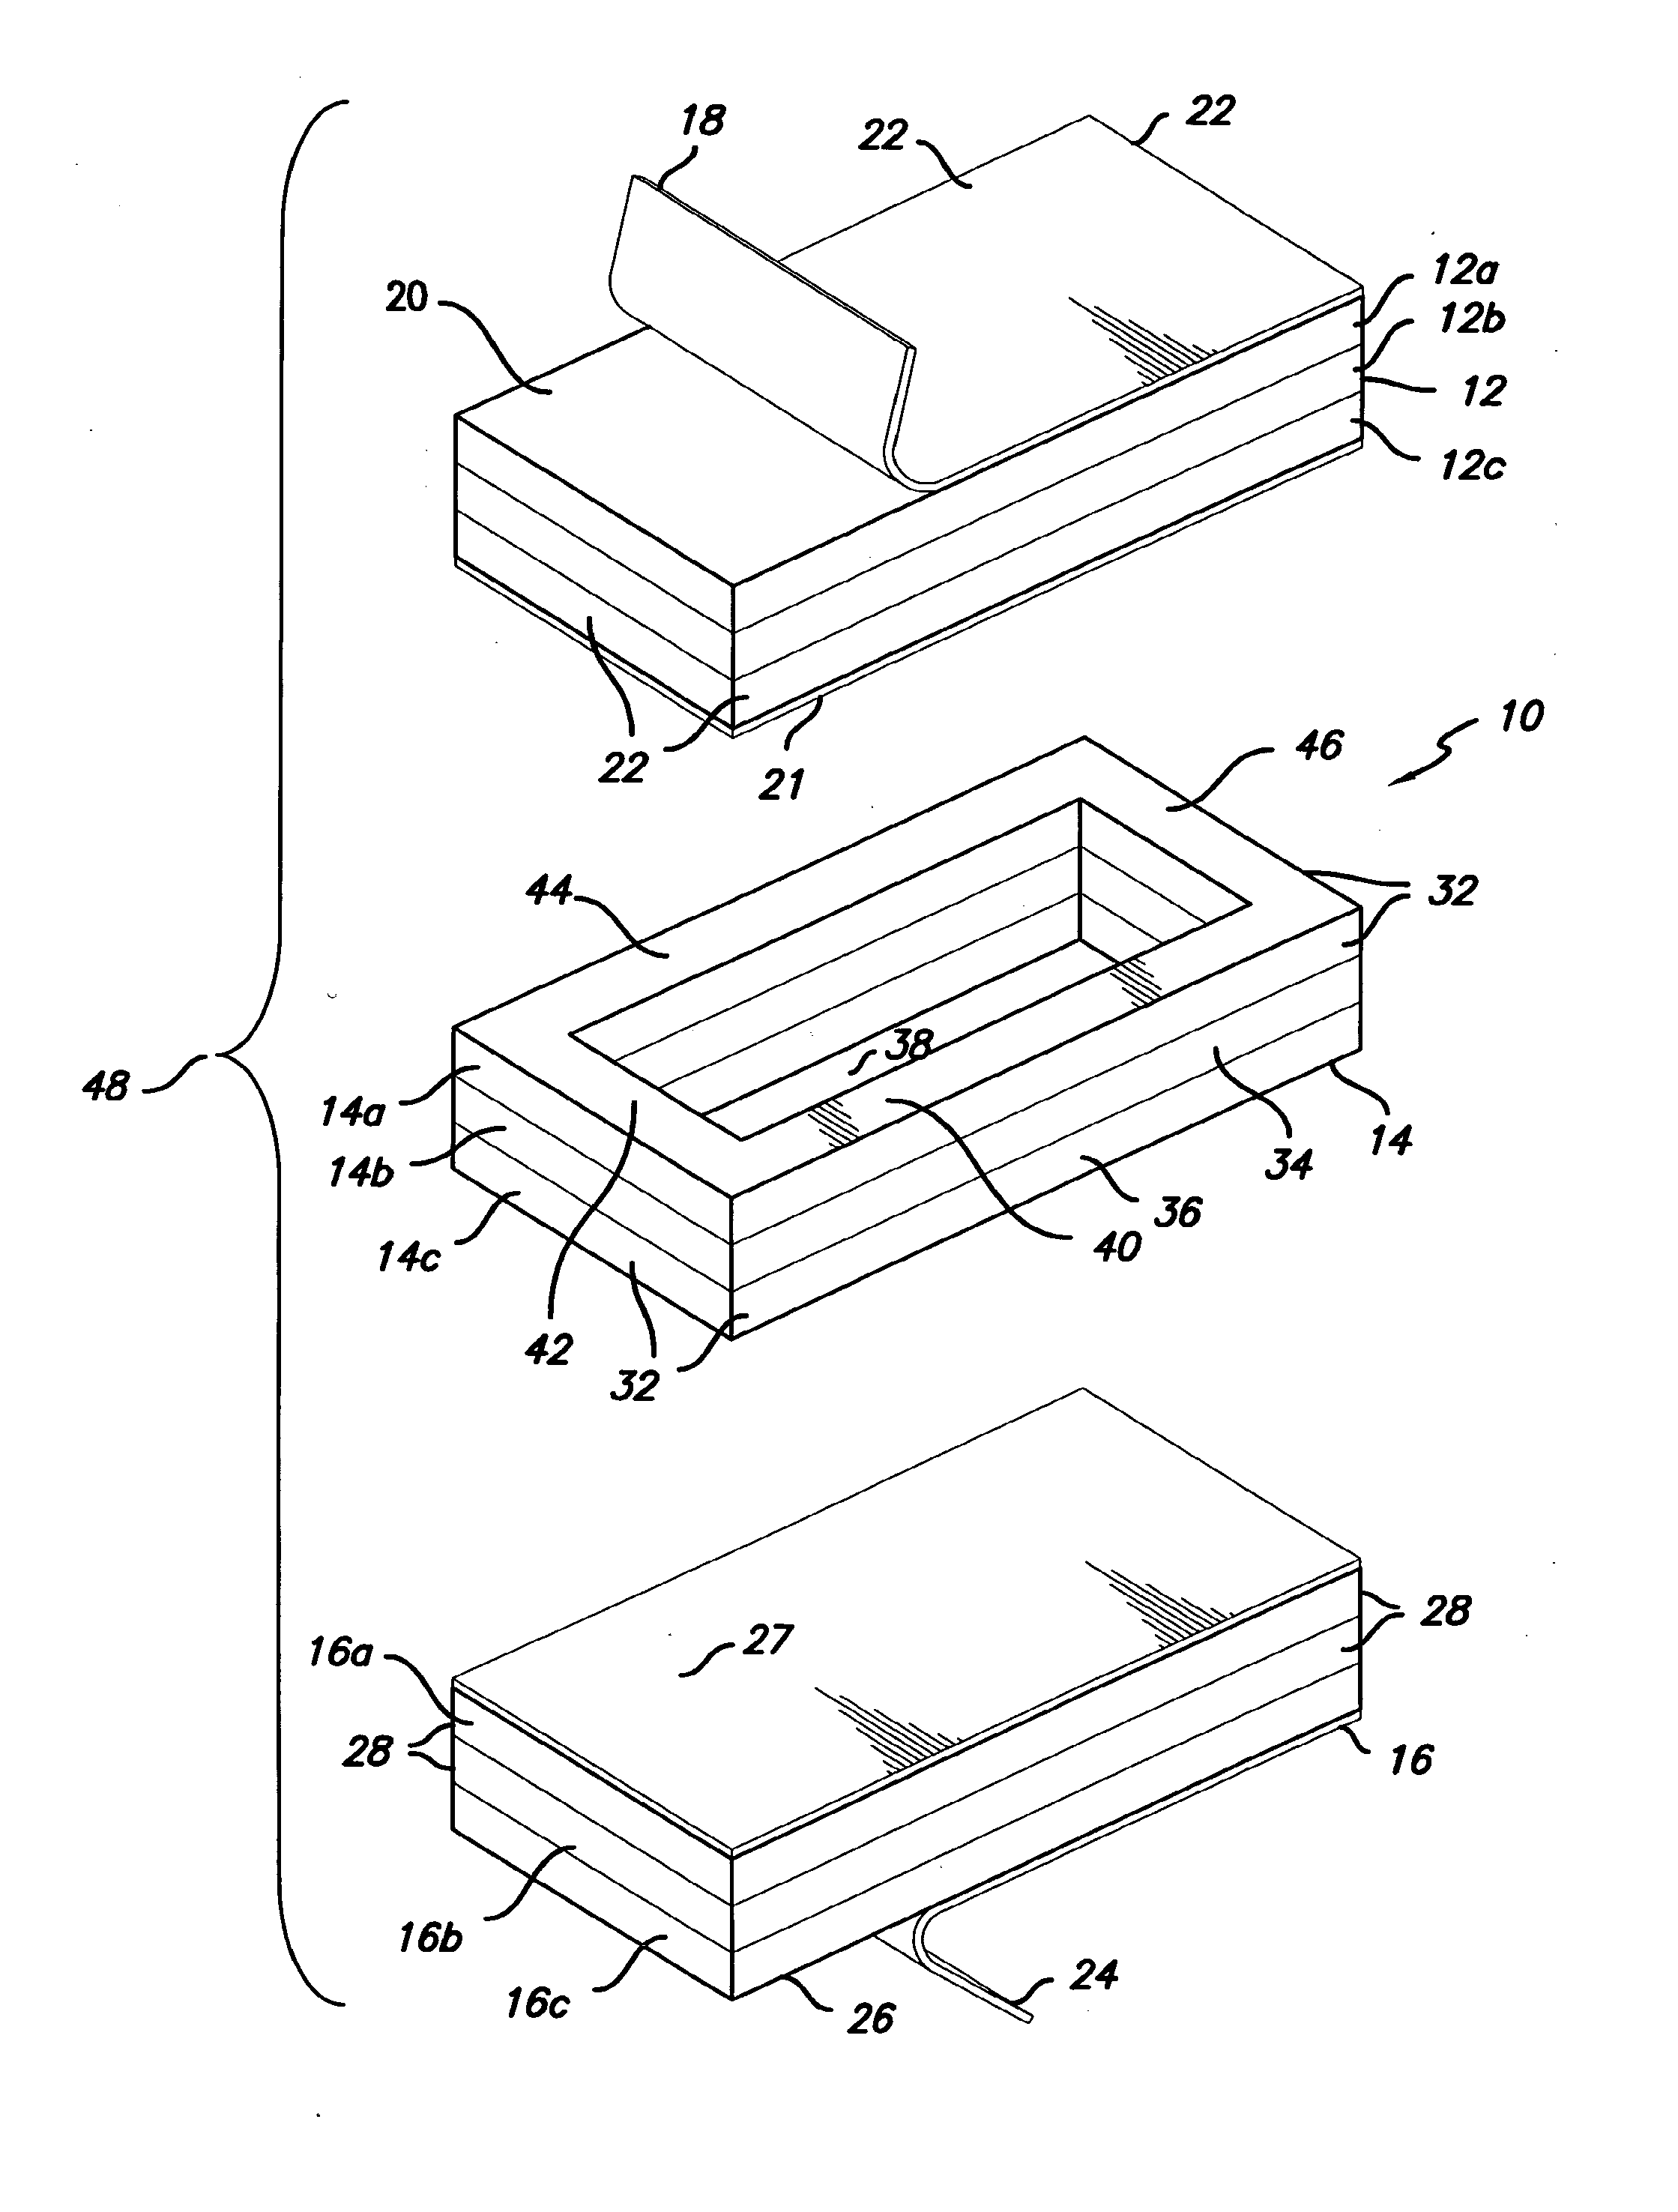 Construction module arrangement